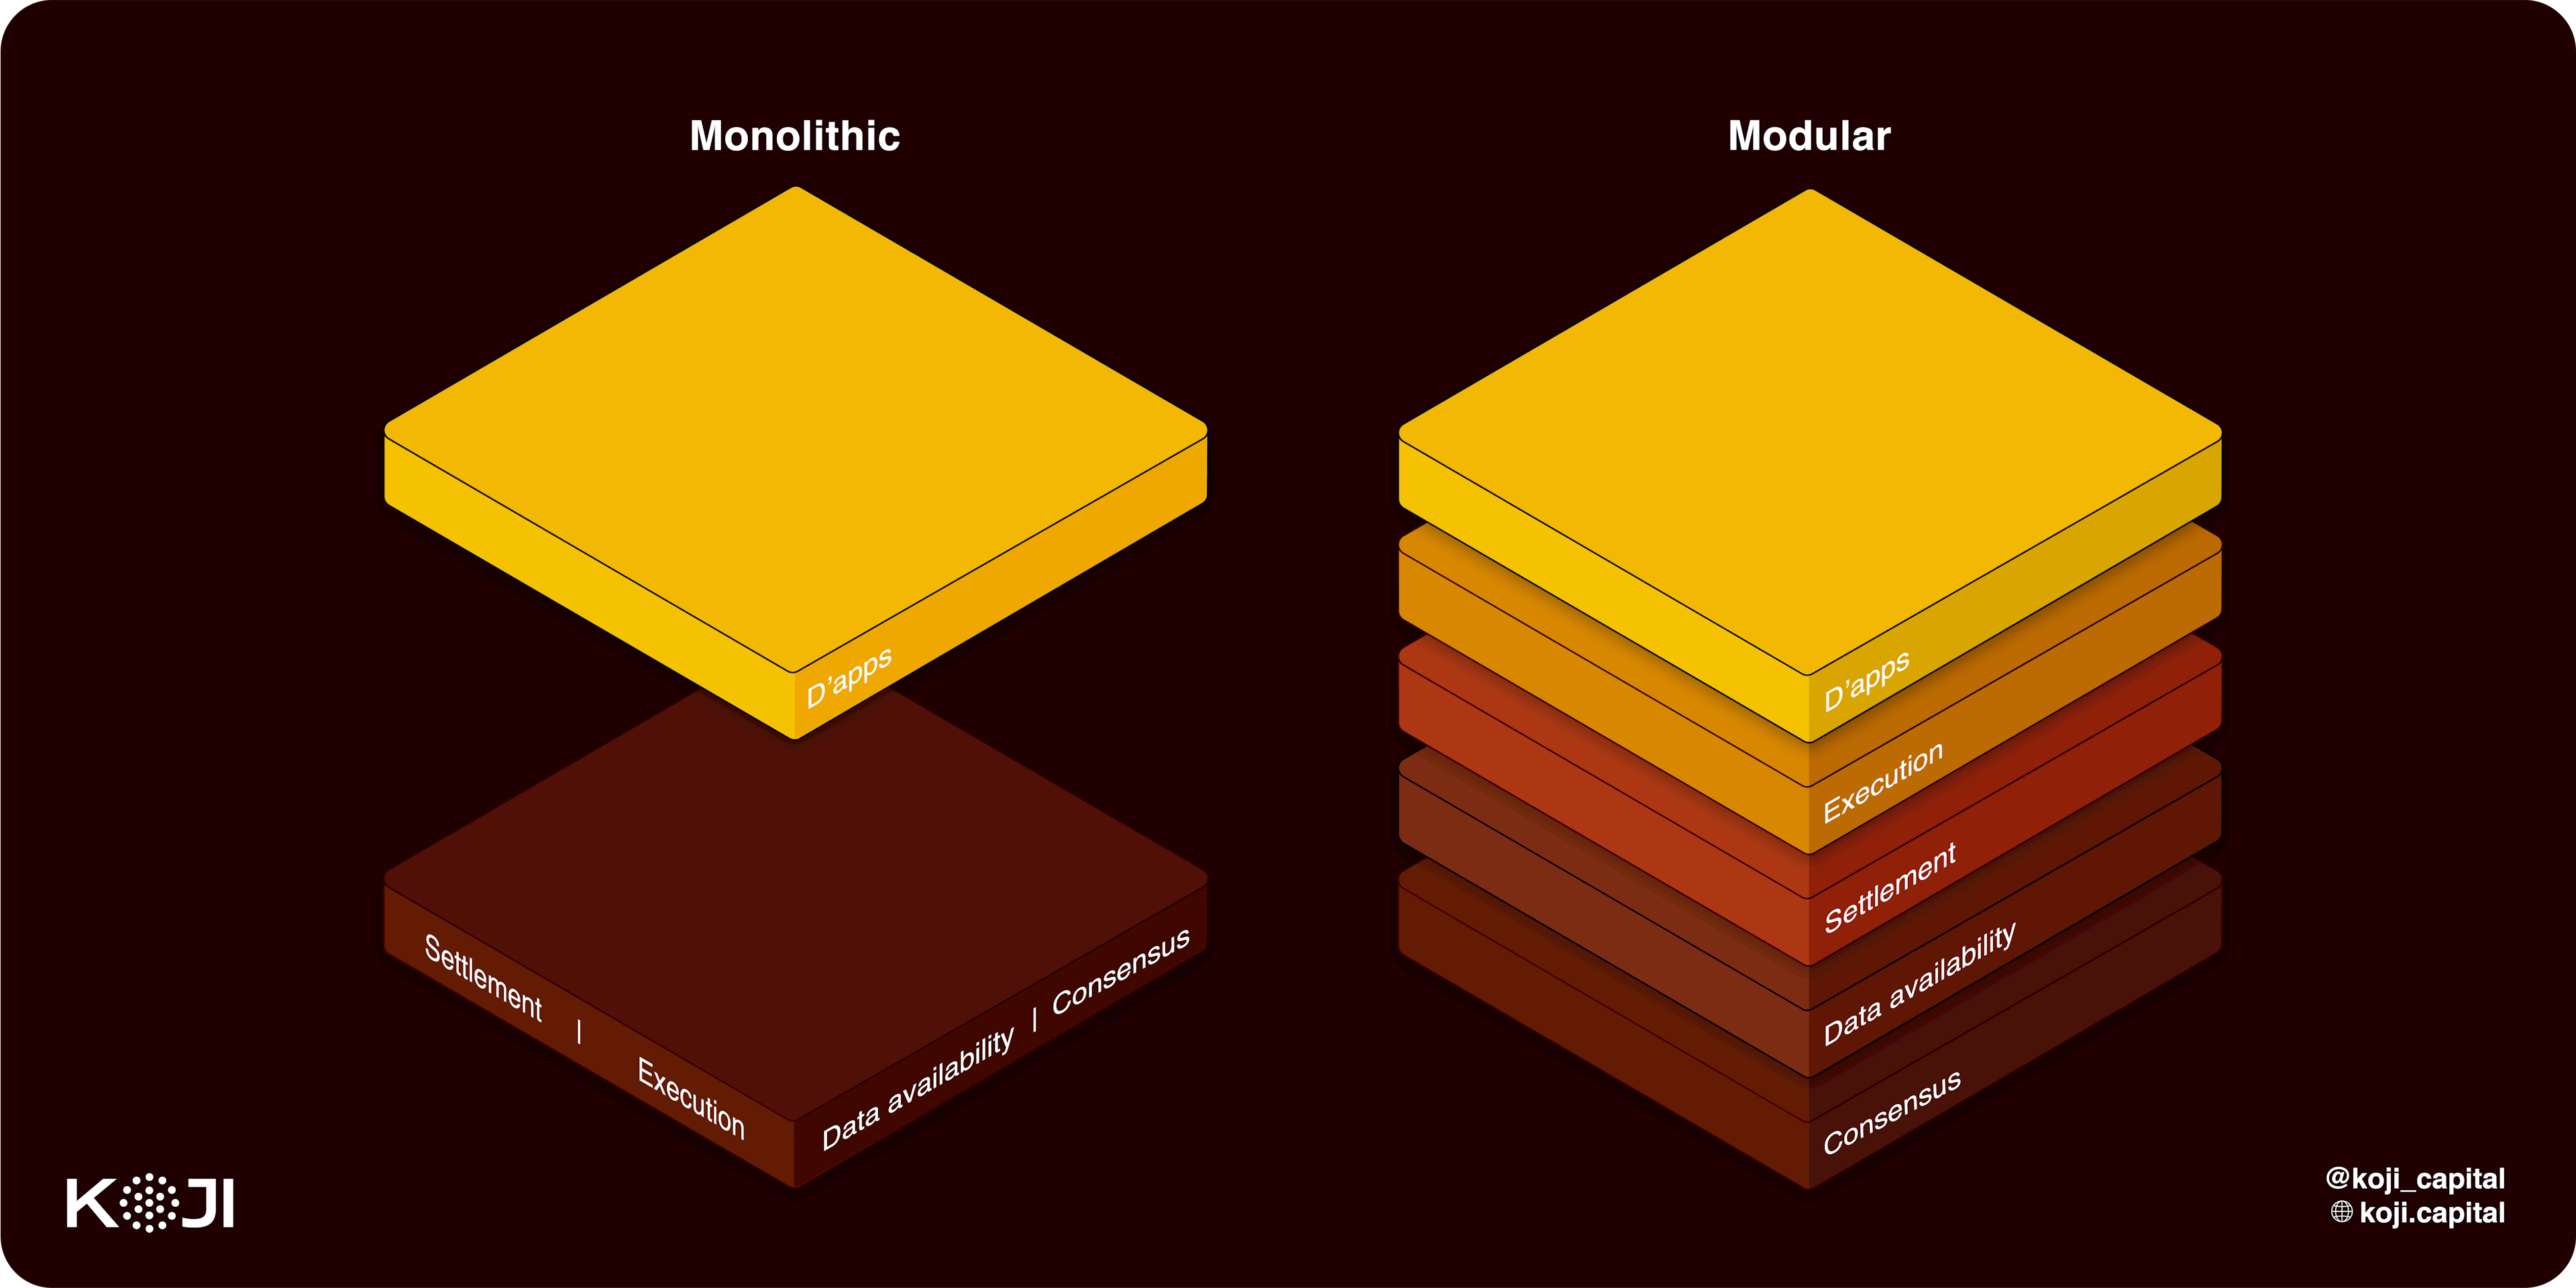 A visual representation of Monolithic vs. Modular blockchain architecture